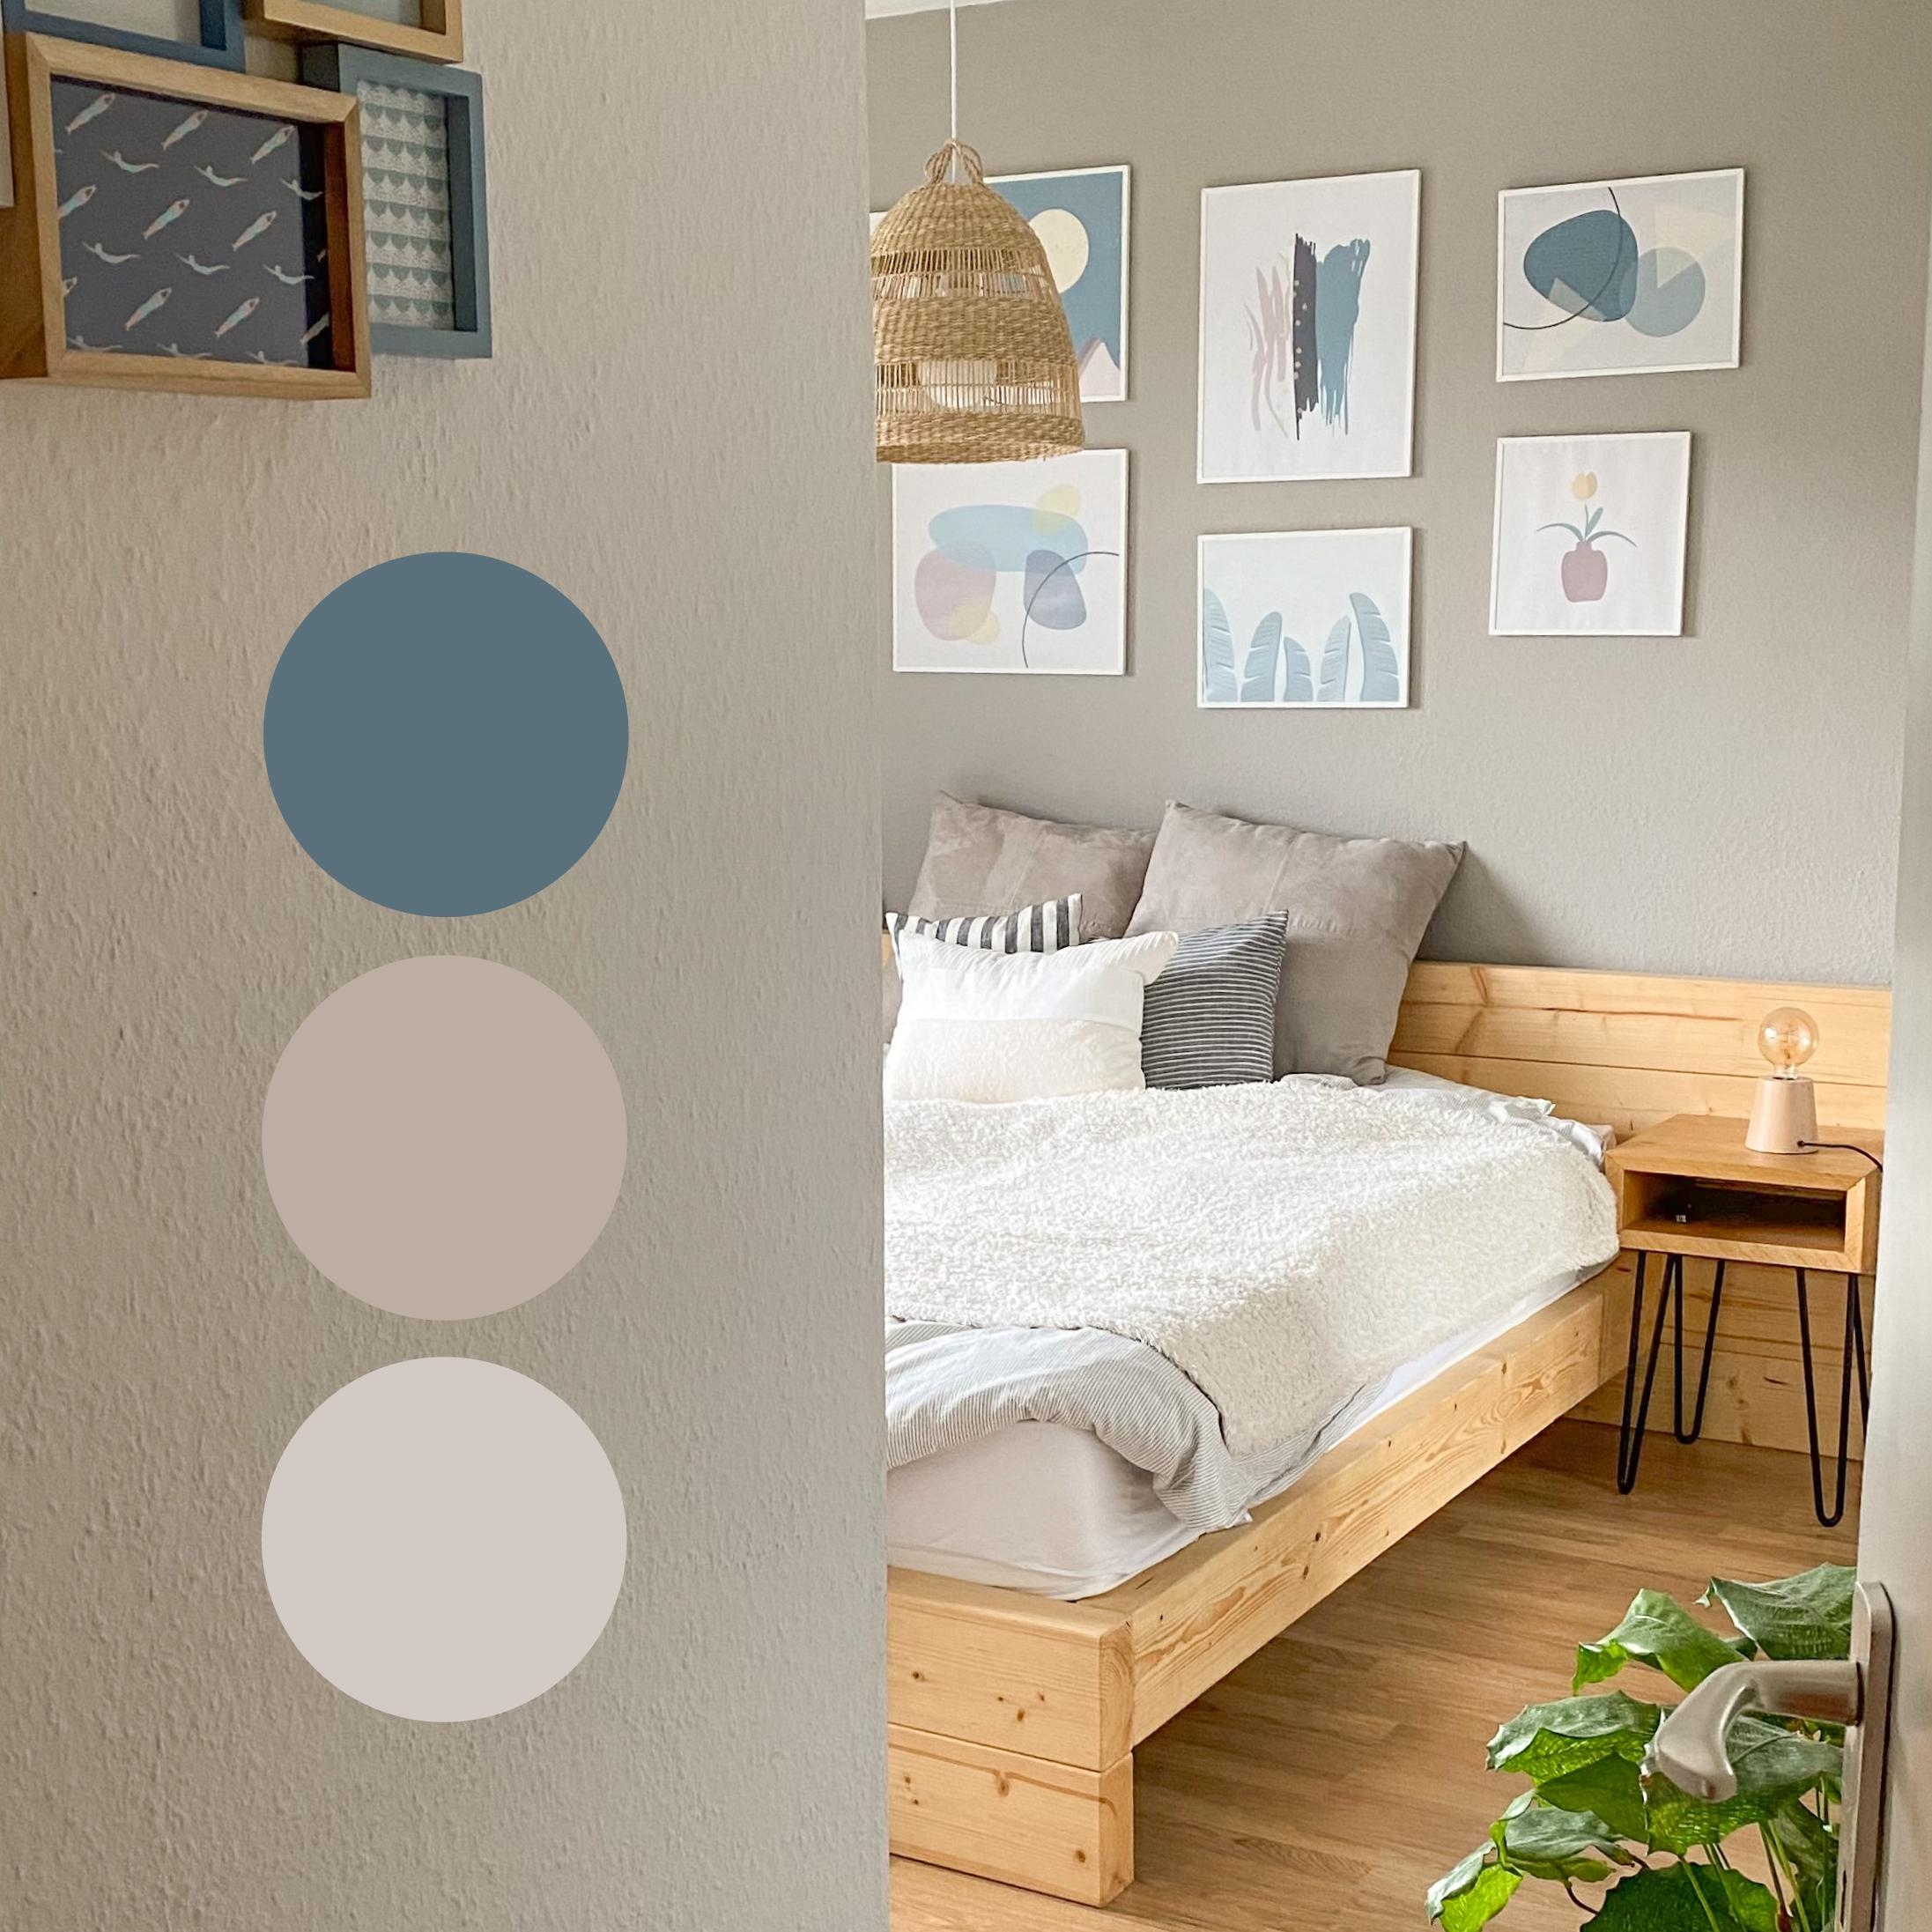 Farbpalette für das Schlafzimmer 🎨 #moodboard #farbpalette #farben #schlafzimmer #bedroom #scandi 